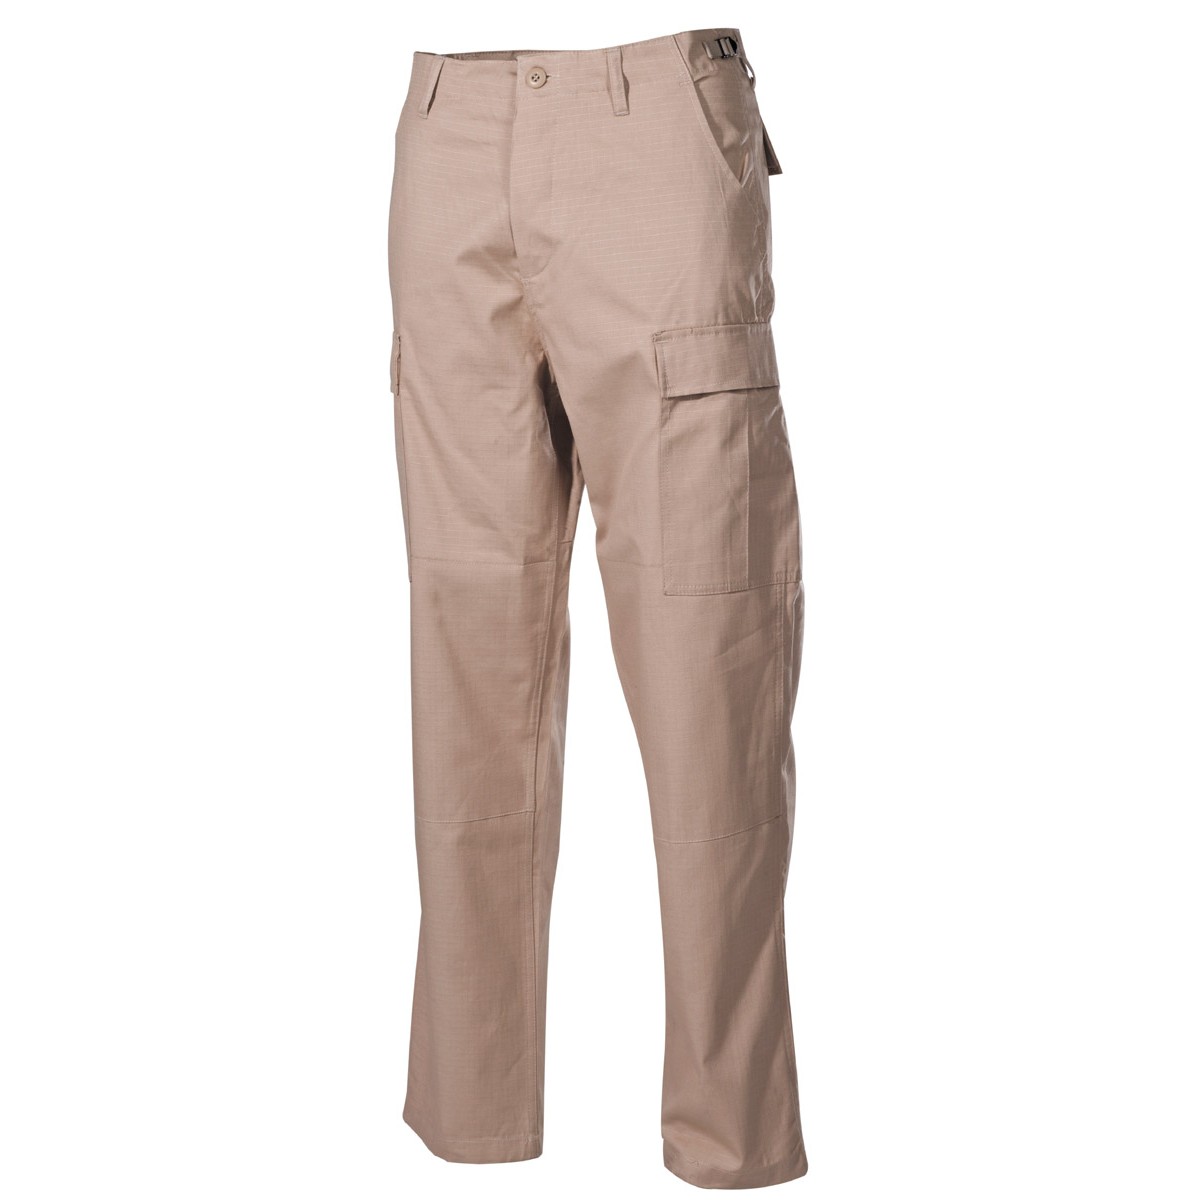 Bojové kalhoty US BDU - khaki, S